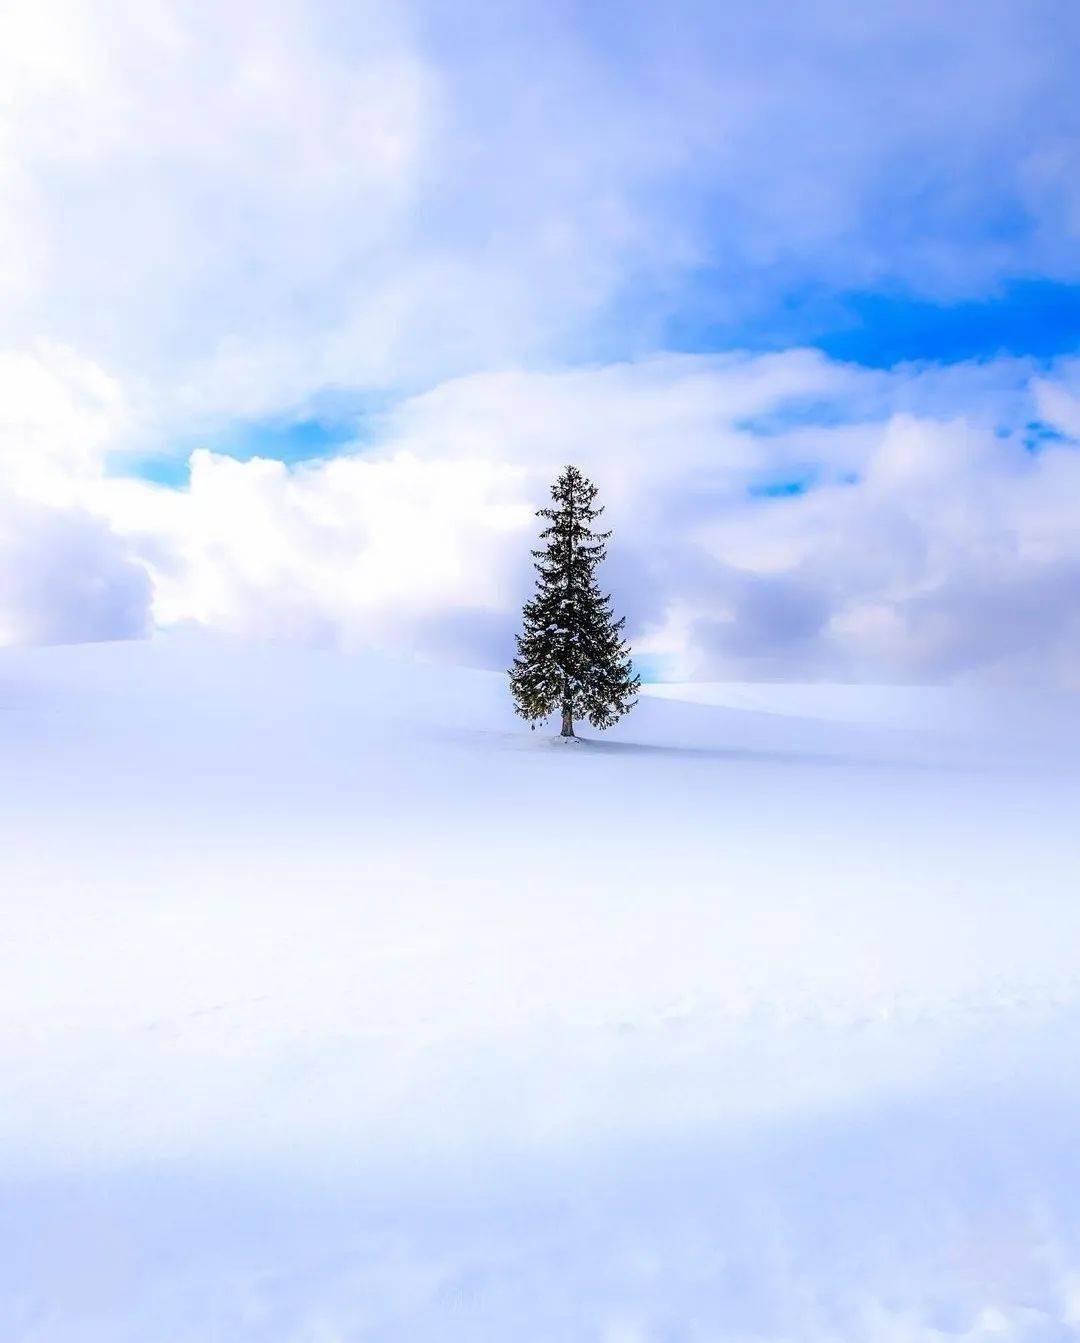 雪地孤树:寂静中的坚韧